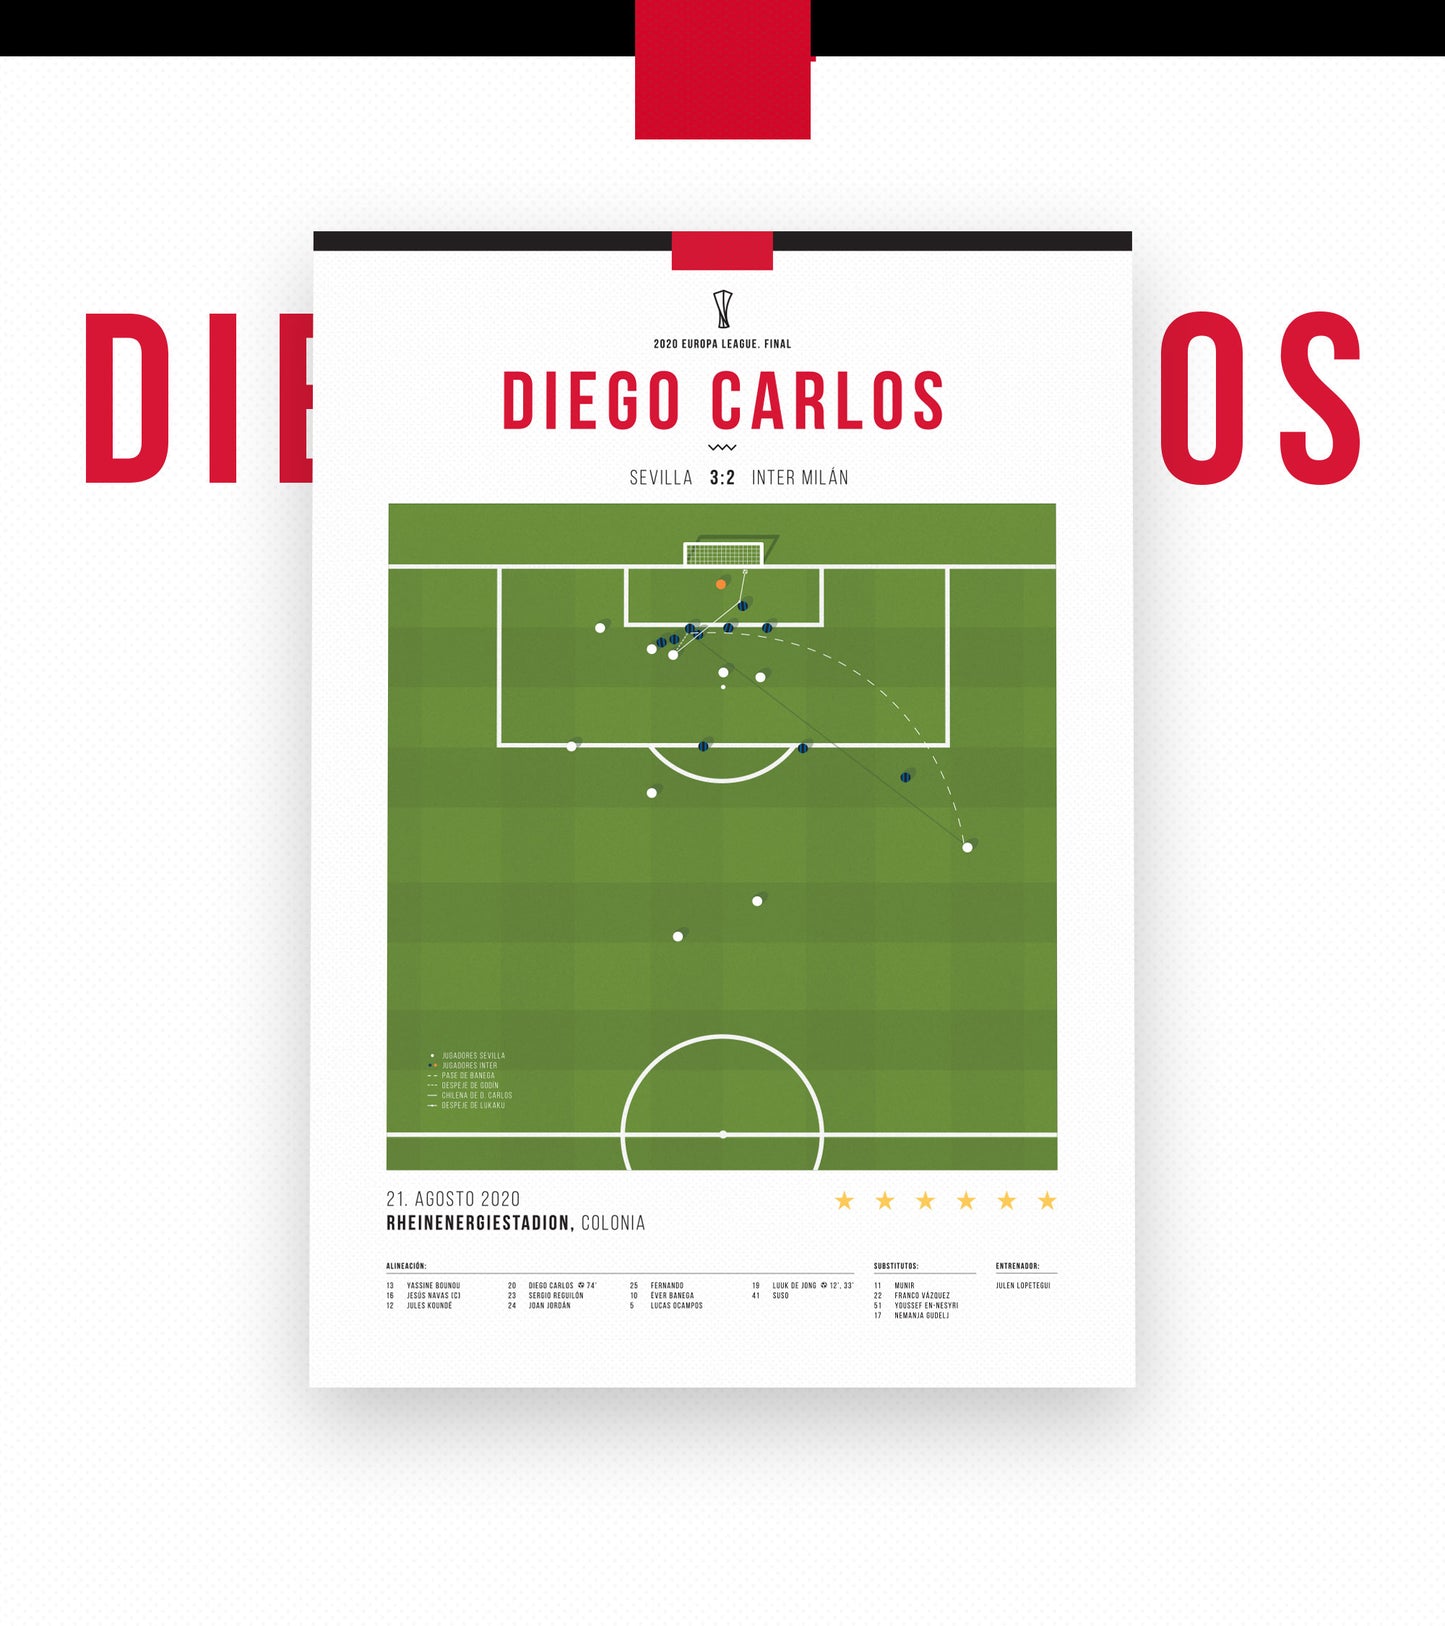 La chilena de Diego Carlos vs Inter de Milán